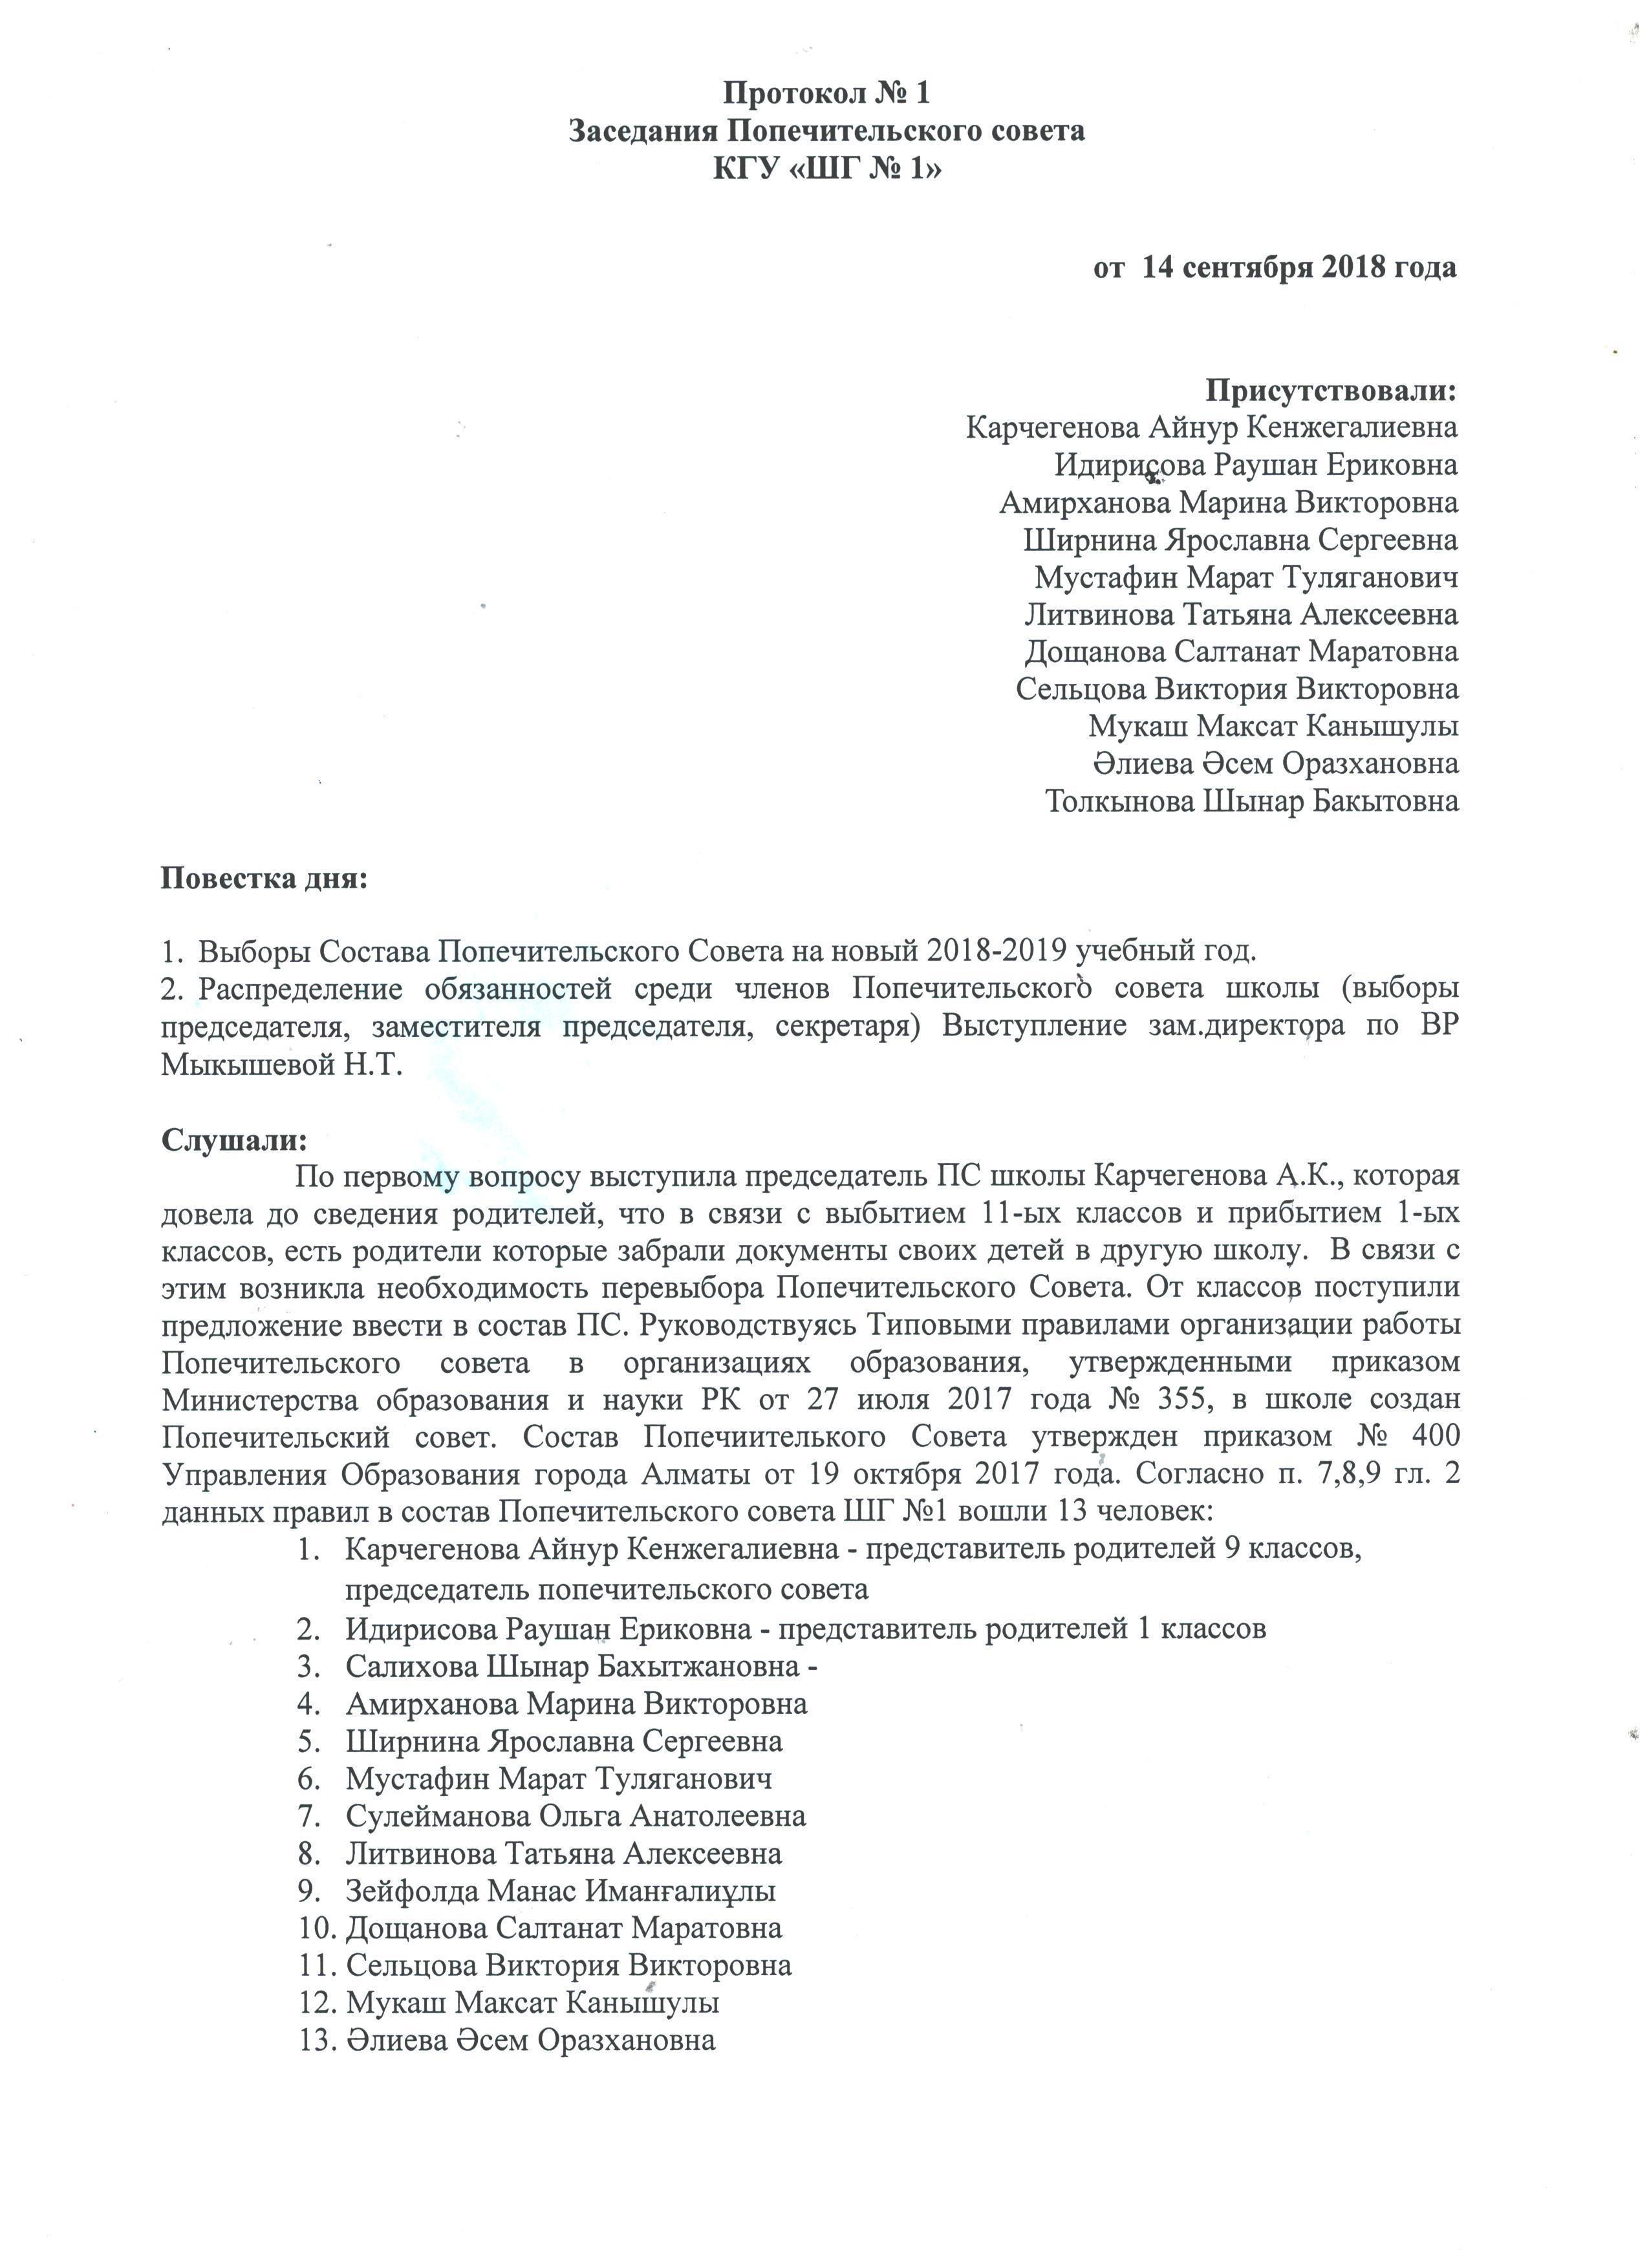 Протокол №1 Заседания Попечительского Совета КГУ "ШГ №1" 2018-2019 учебный год